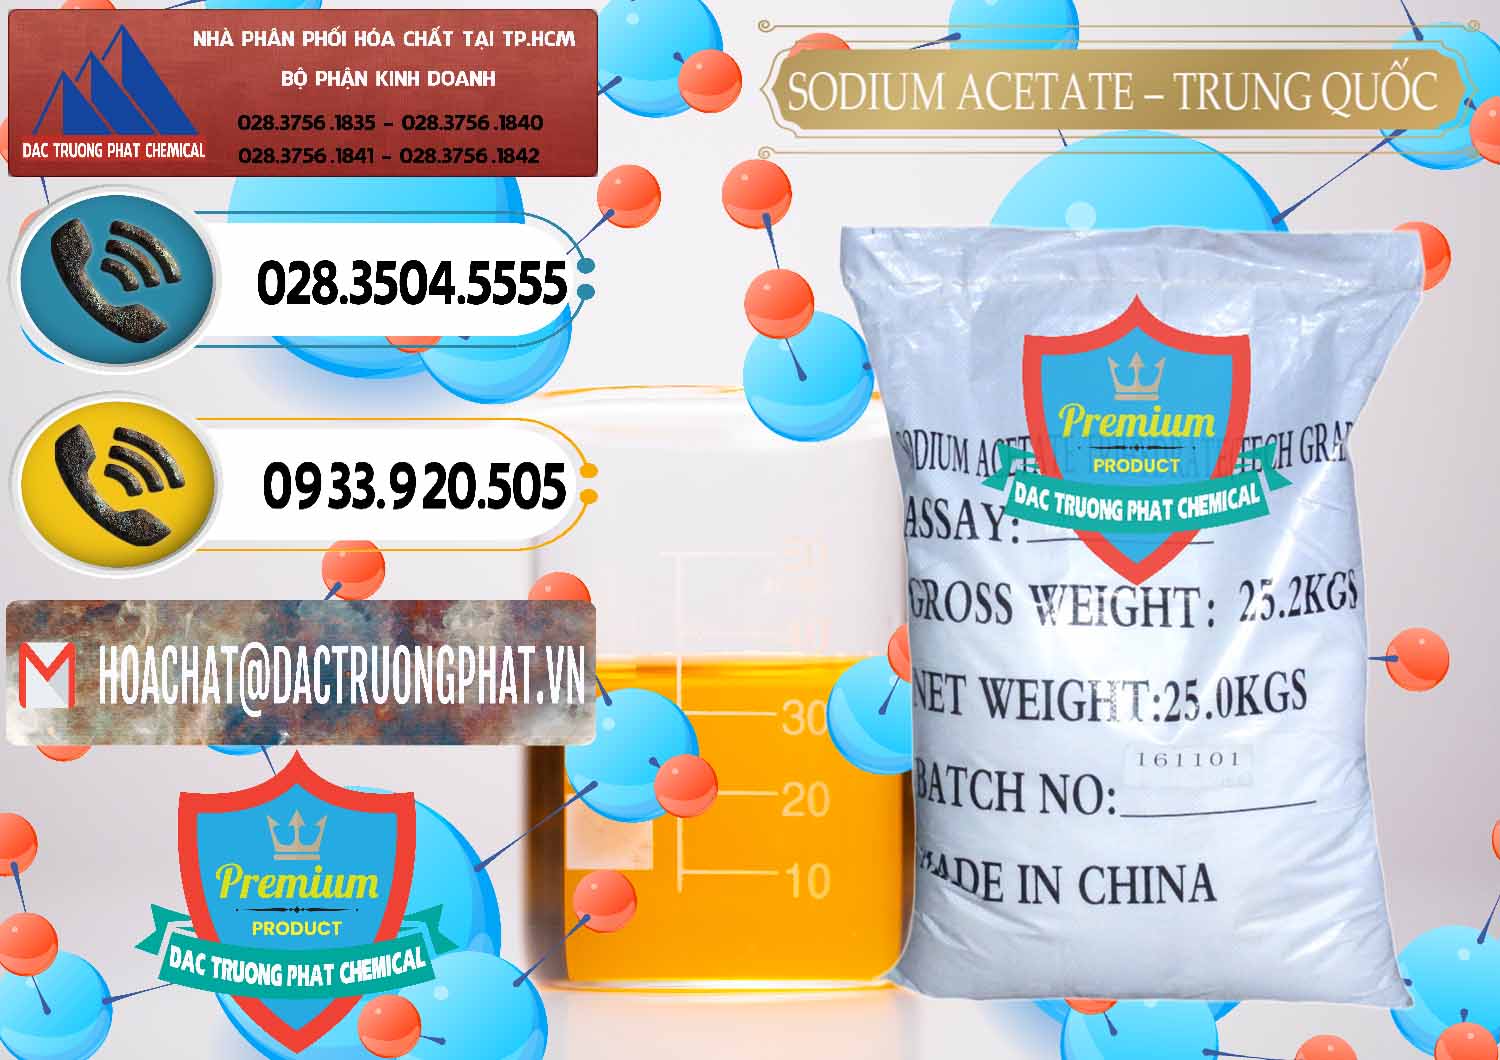 Đơn vị cung cấp _ bán Sodium Acetate - Natri Acetate Trung Quốc China - 0134 - Công ty chuyên phân phối và bán hóa chất tại TP.HCM - hoachatdetnhuom.vn